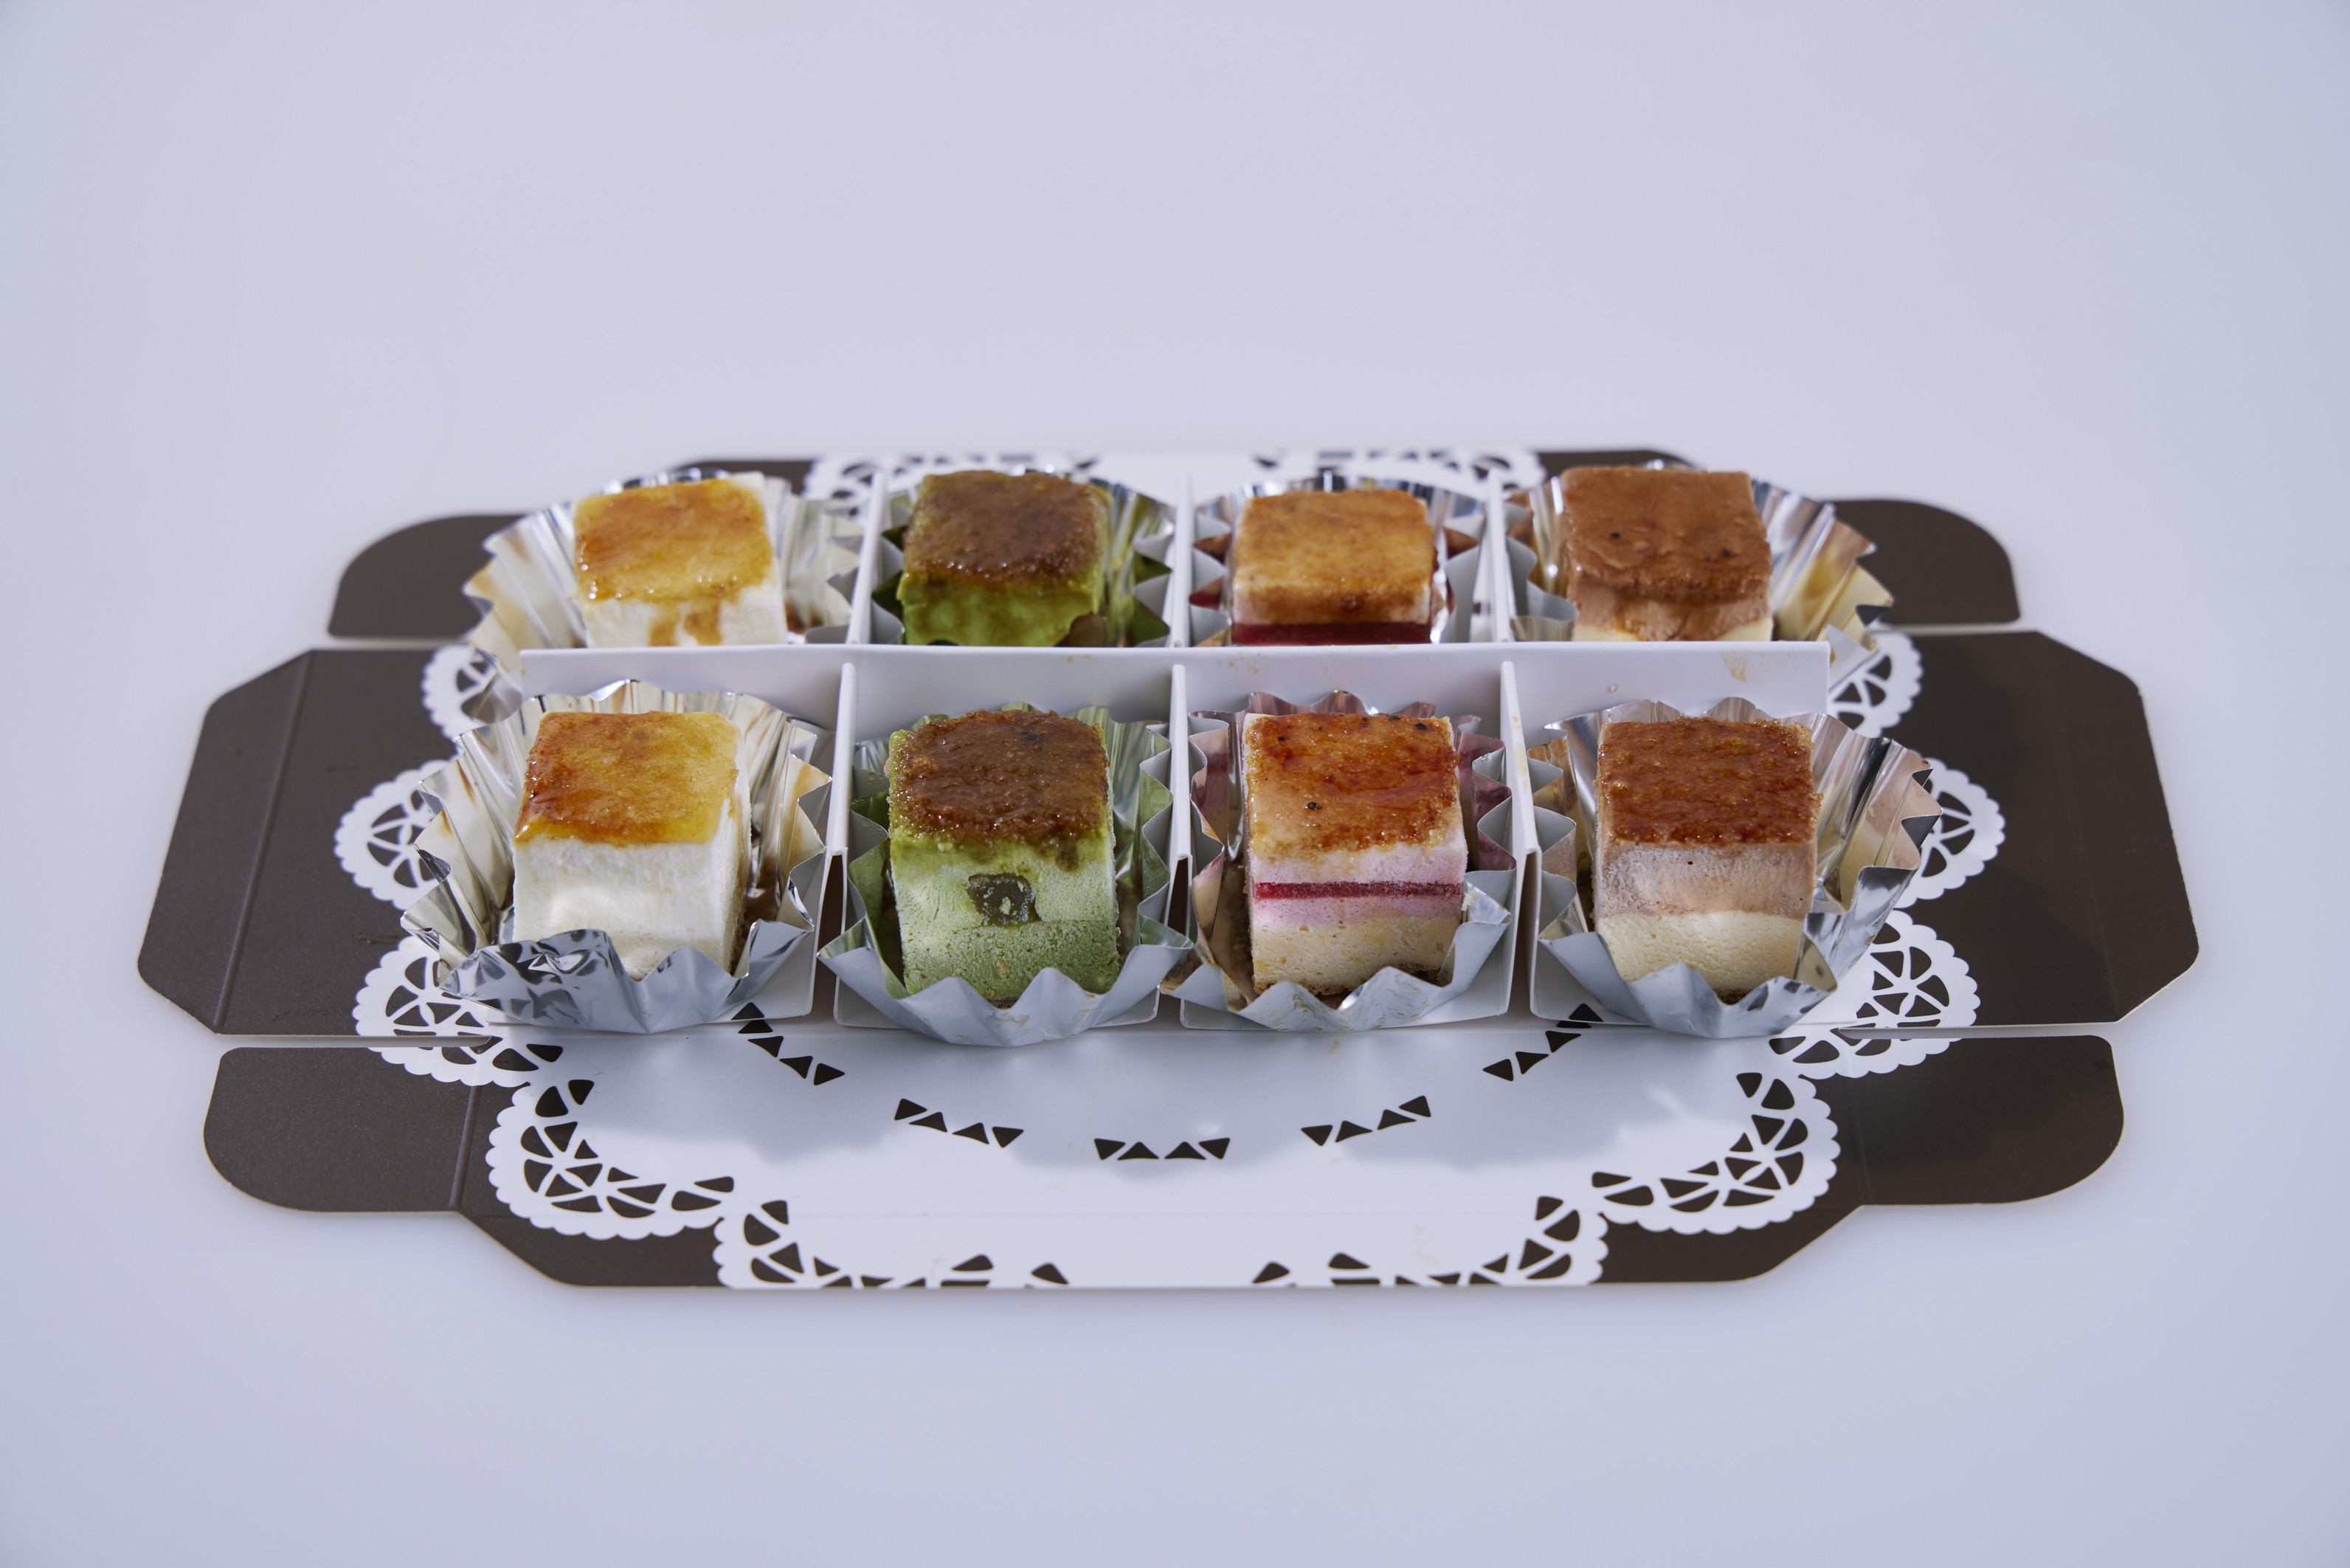 ヌリカベ】炙って食べるチーズケーキ「minichii」 mix 8個set ※冷凍便